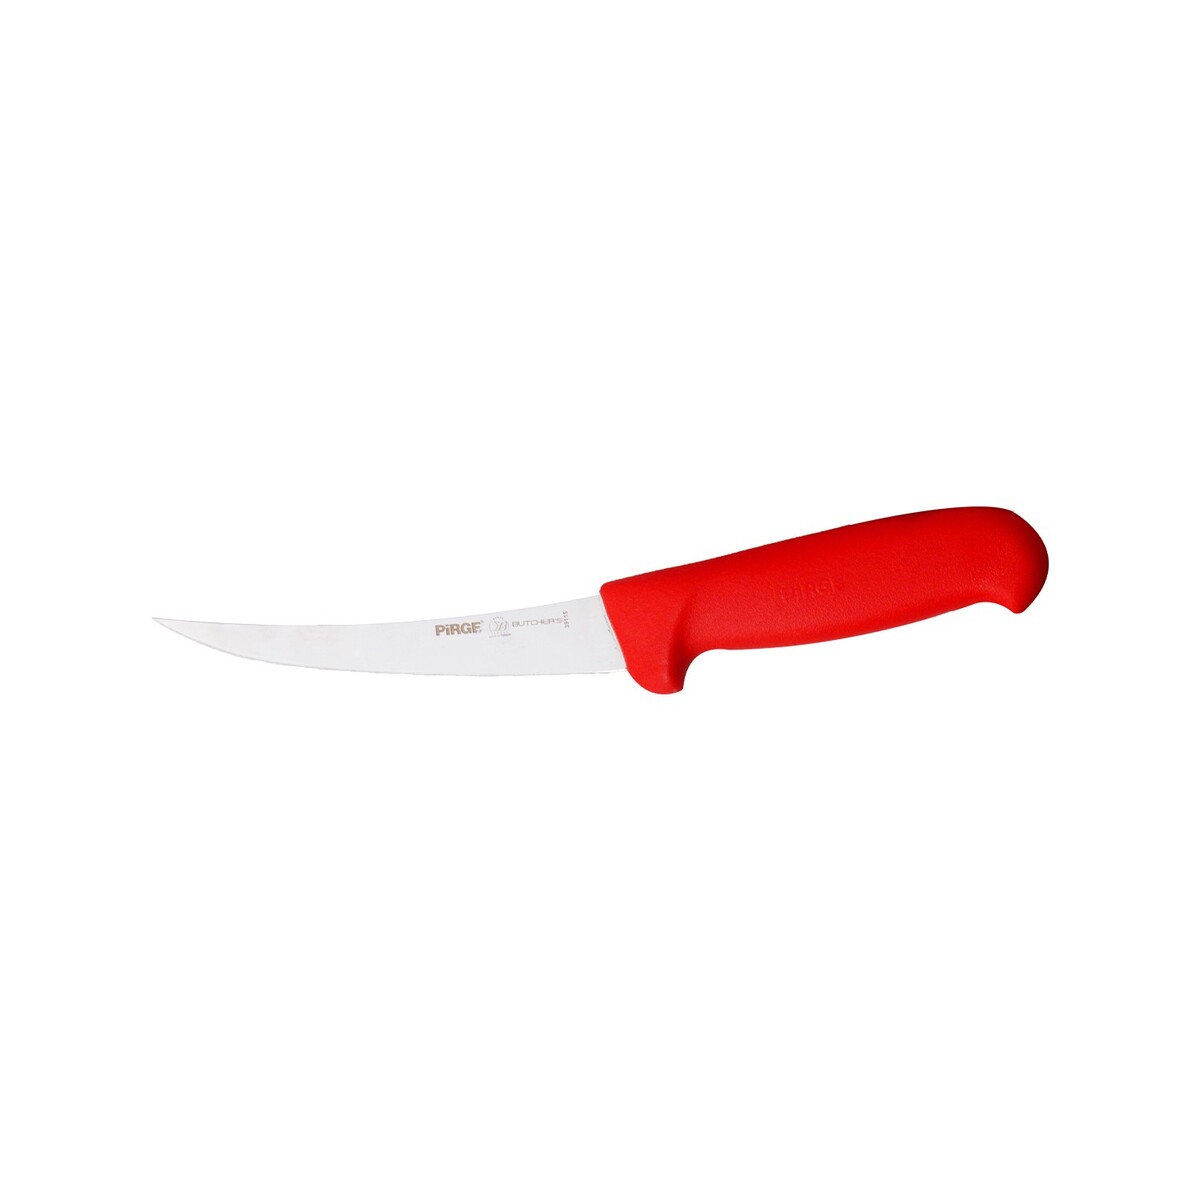 Pirge Butcher's Boning Knife Hard 39115 Assorted 15cm